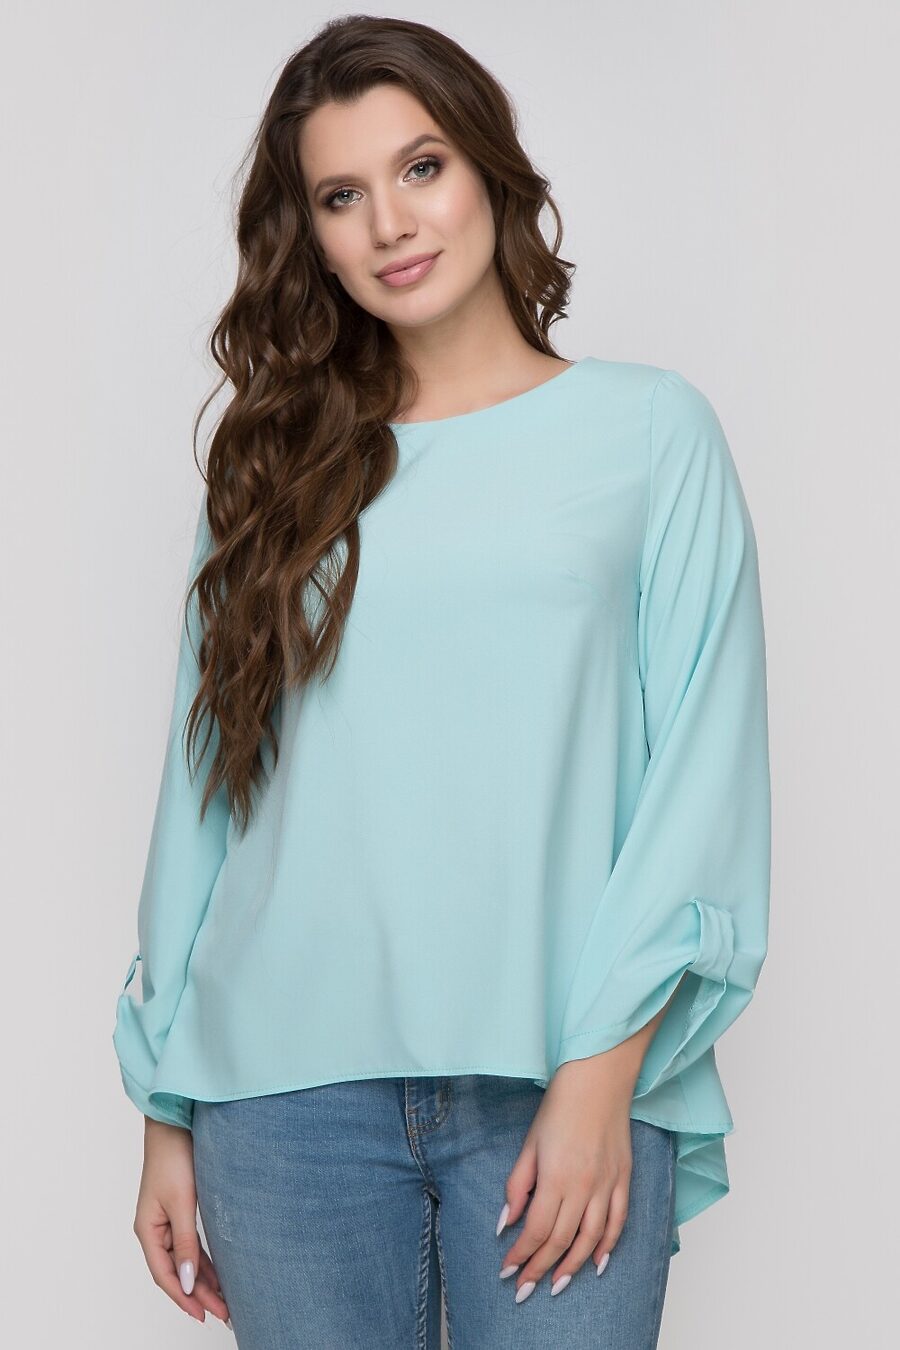 Блуза DSTREND (776017), купить в Moyo.moda